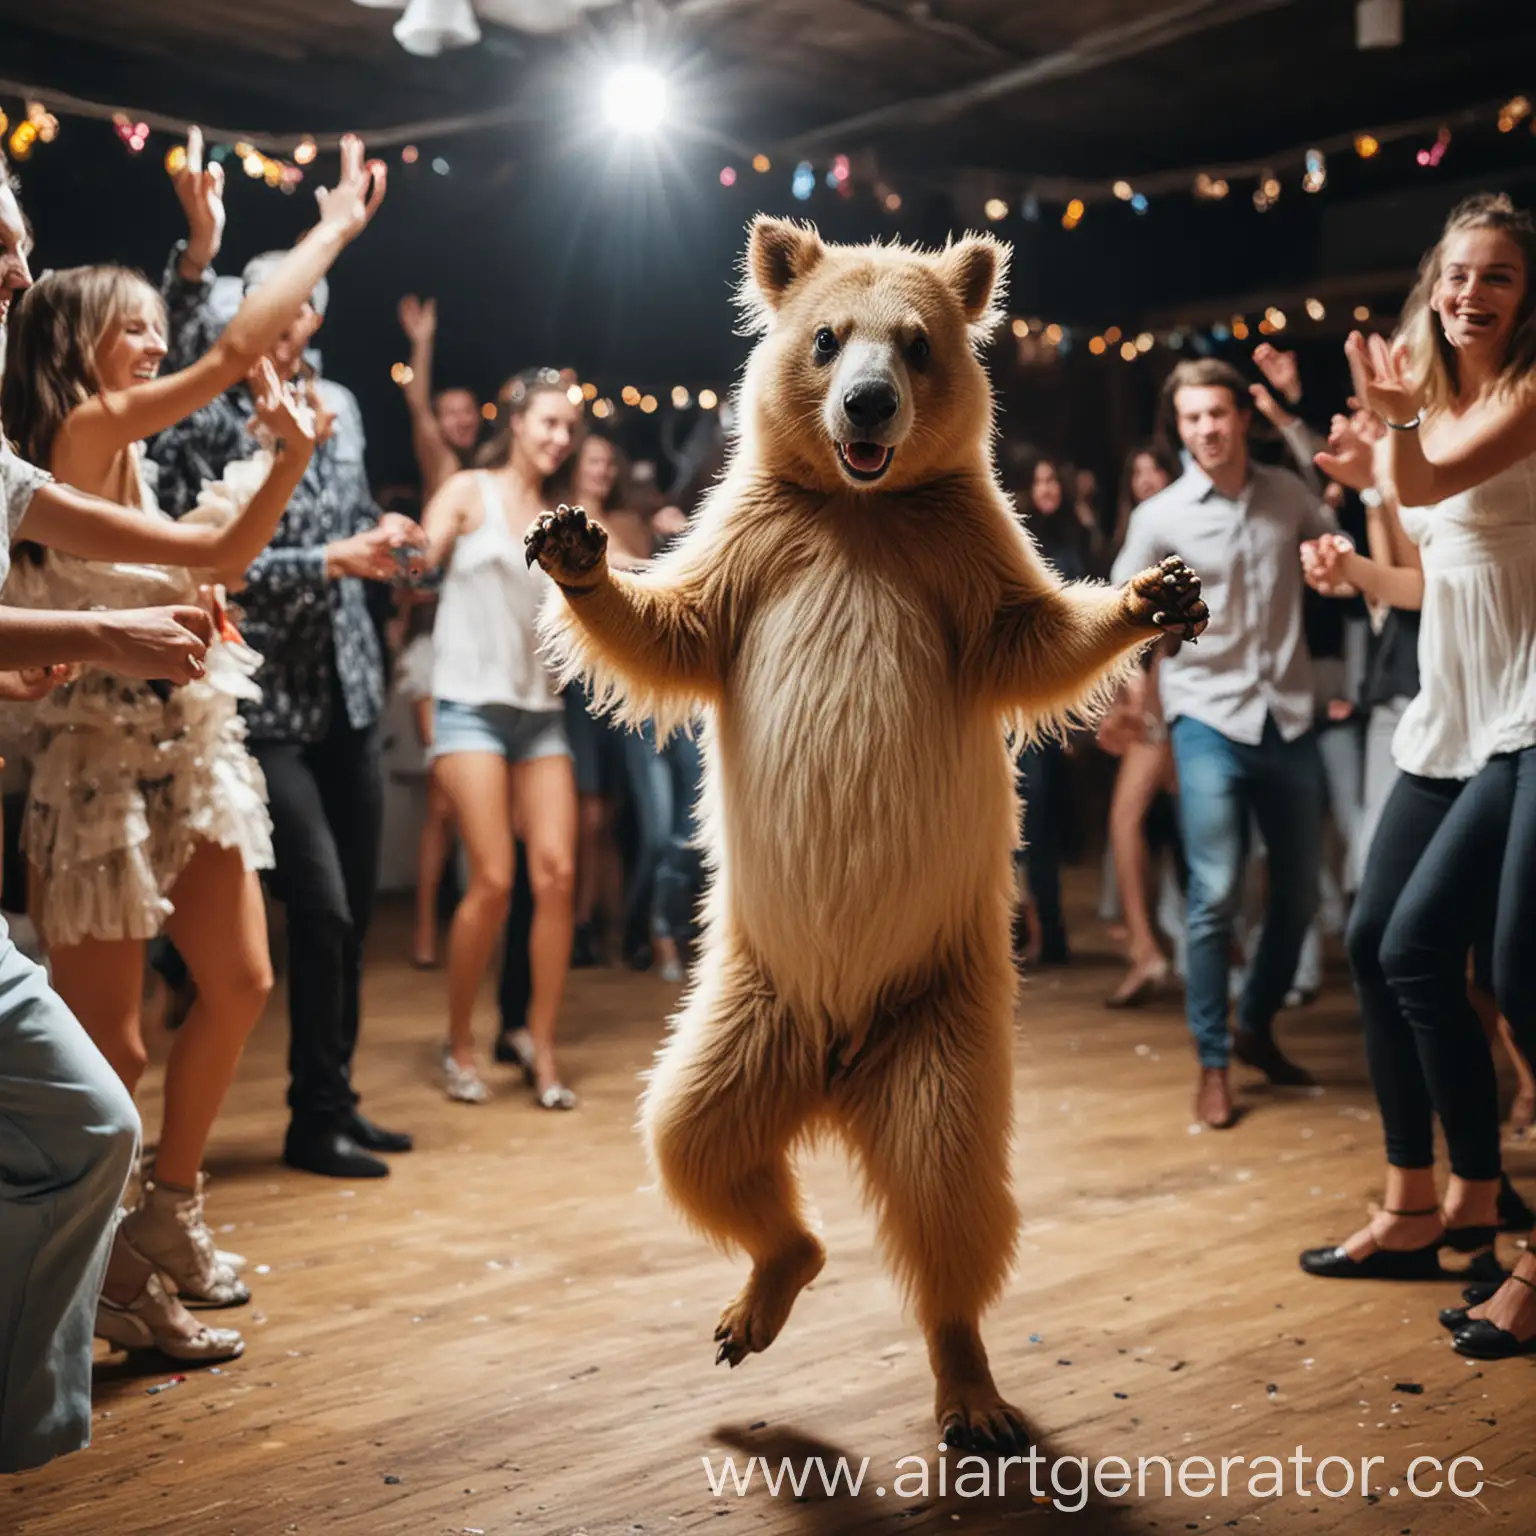 Joyful-Animal-Dance-Celebration